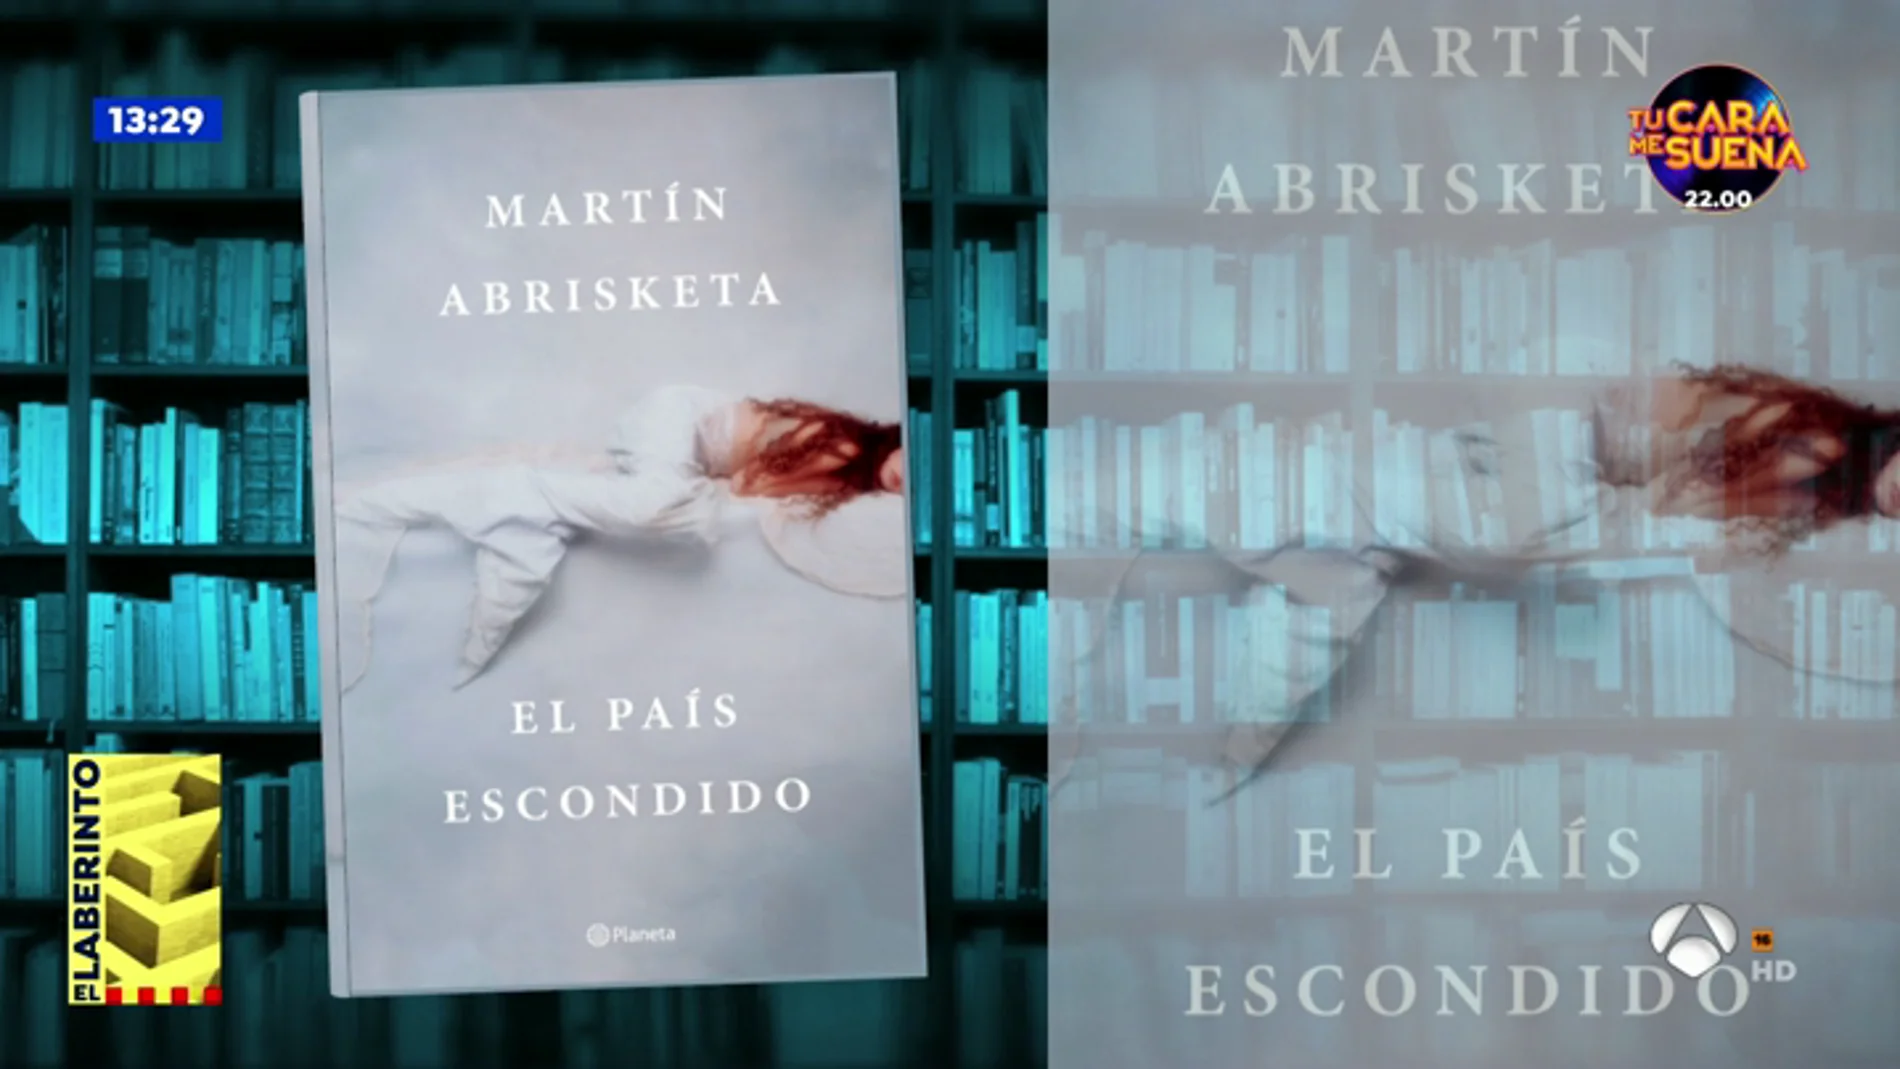 Las recomendaciones literarias de 'Espejo Público': 'El país escondido' y 'Retrato del vizconde en invierno'